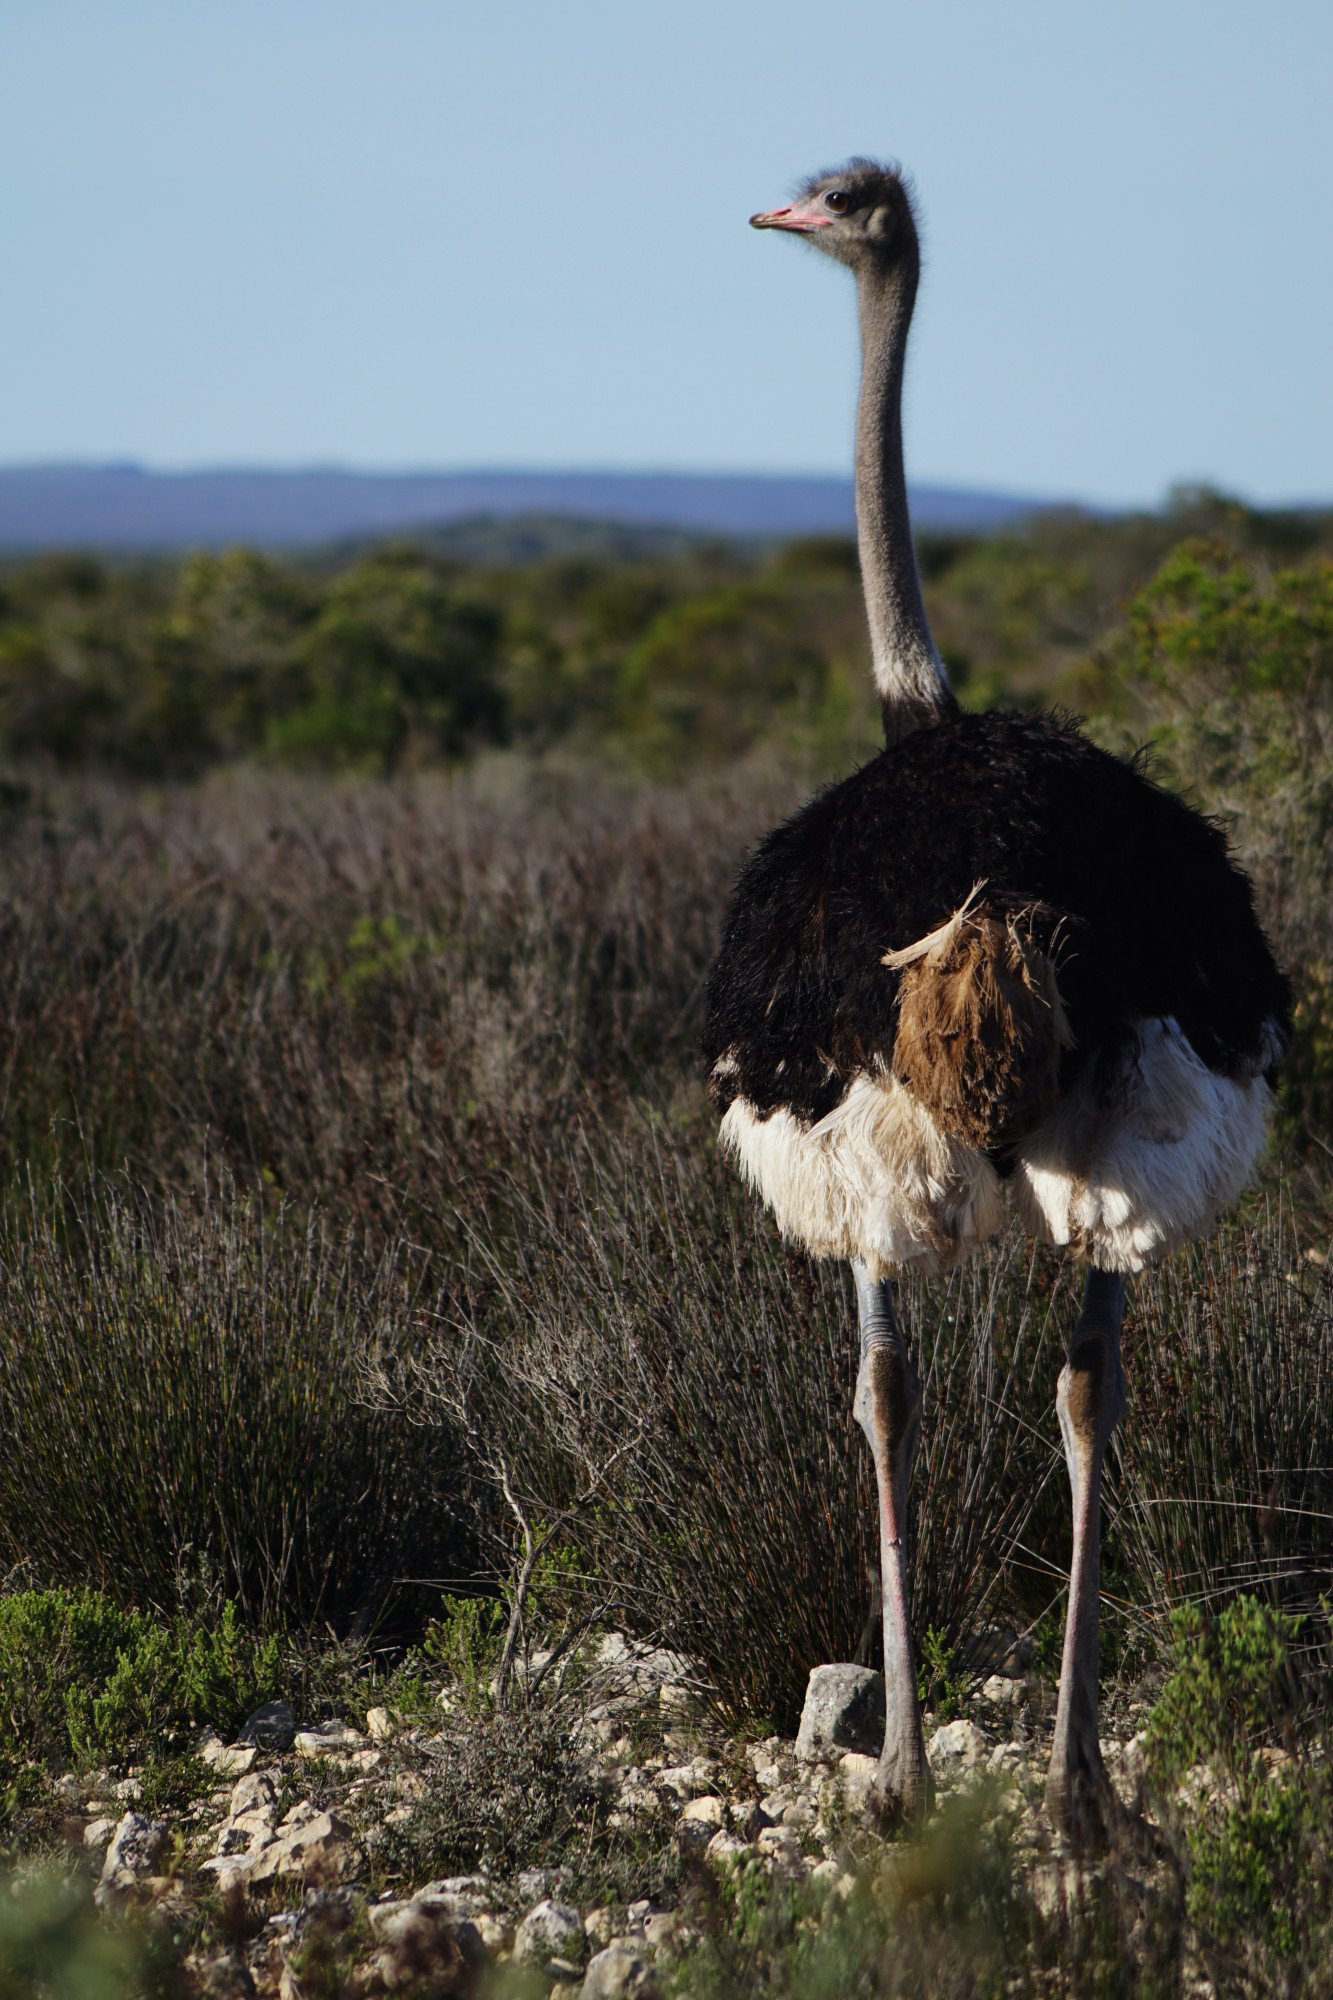 Kaapstad struisvogel